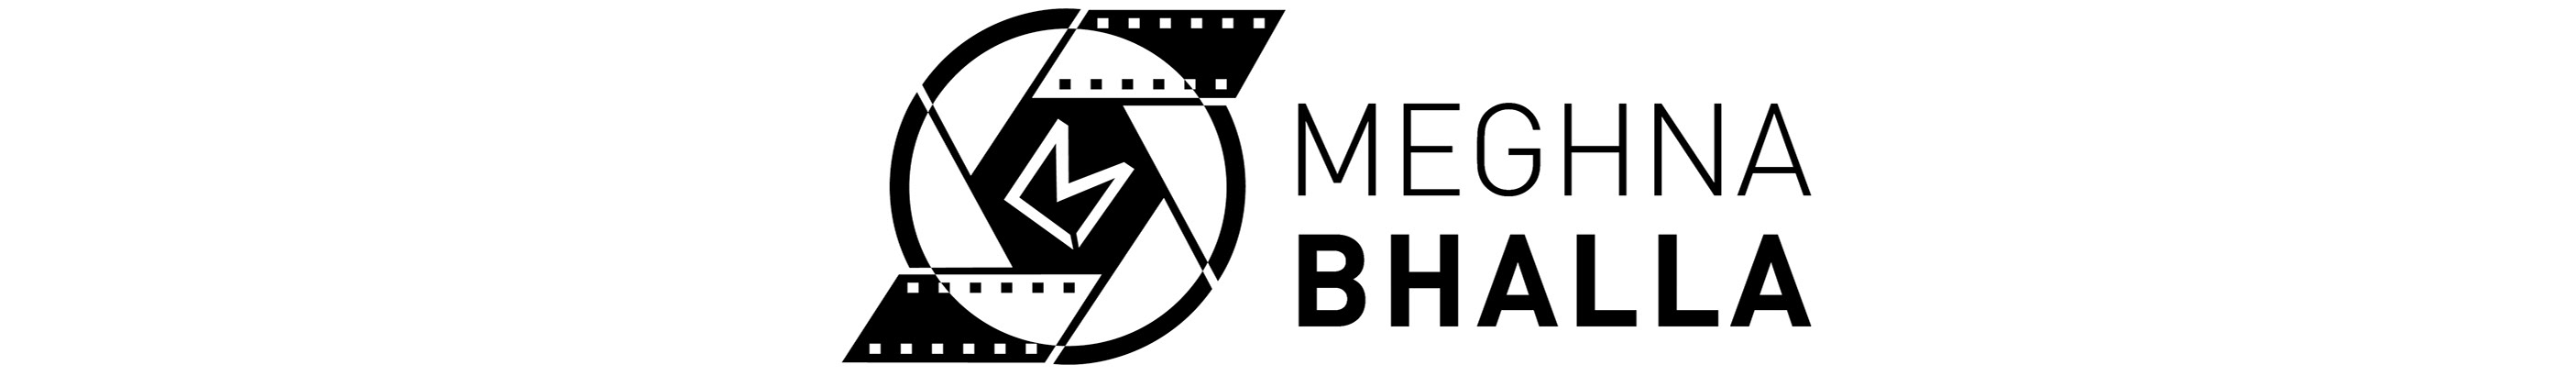 Profil-Banner von Meghna Bhalla